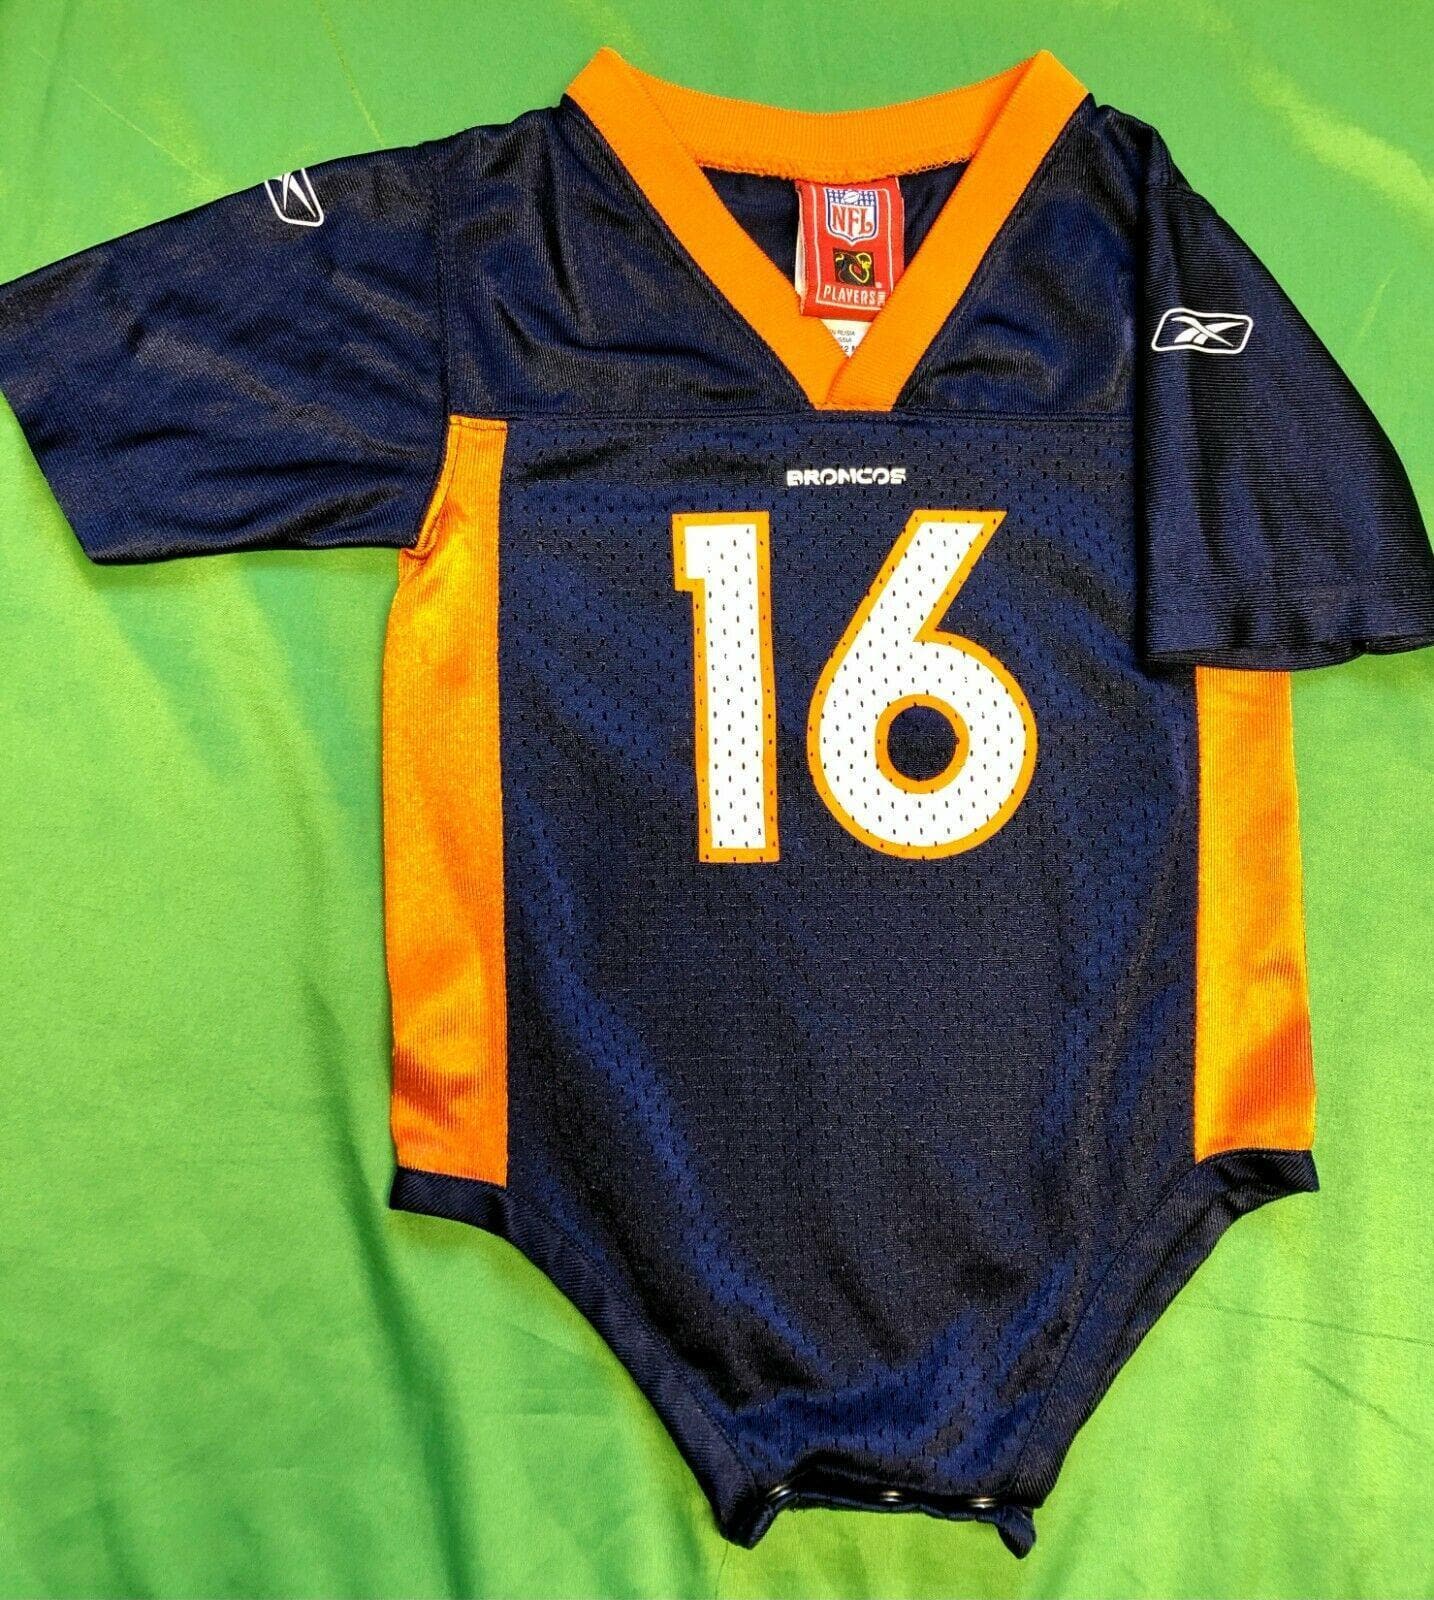 NFL Denver Broncos Jake Plummer #16 Bodysuit/Vest 12 months